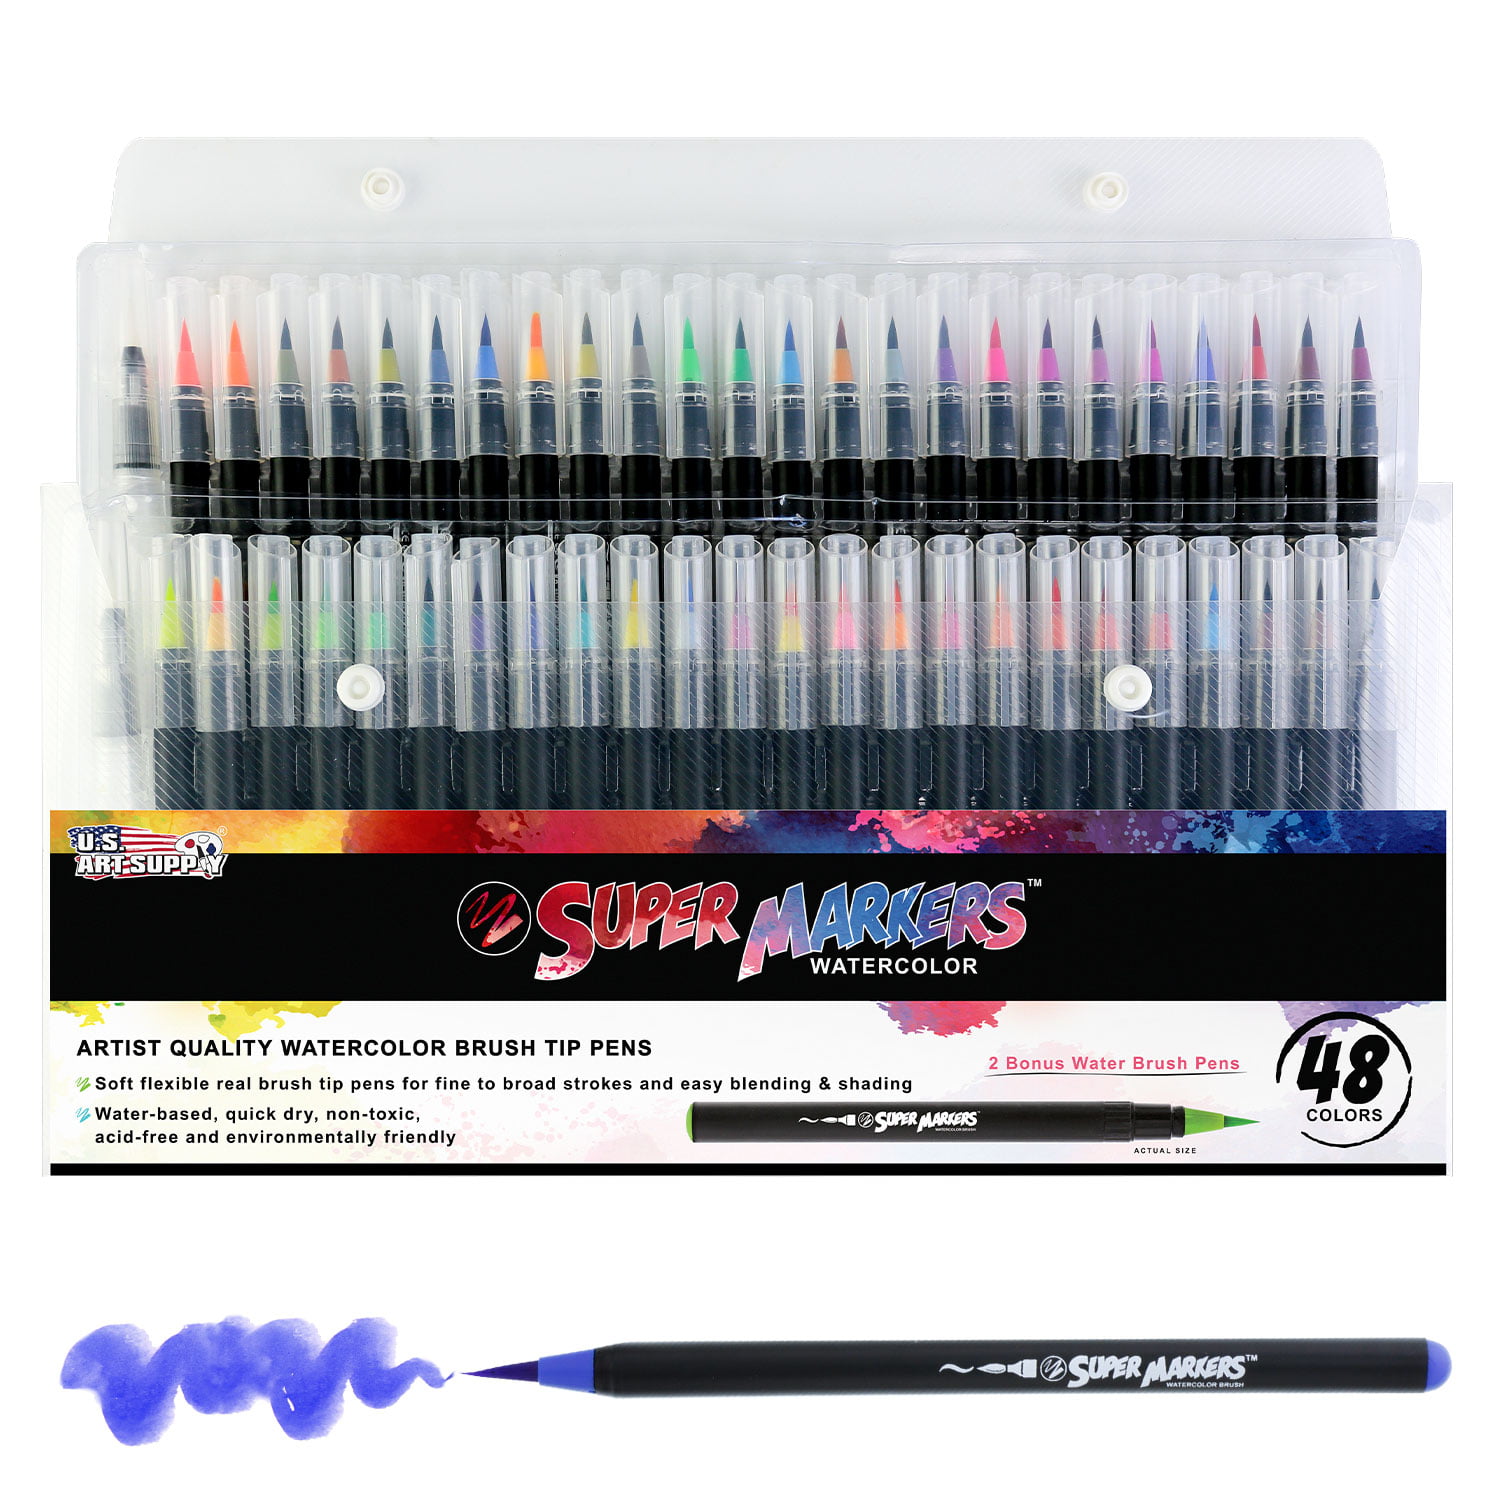 48 Color Super Markers Watercolor Soft Flexible Brush Tip Pens Set - Fine & Broad Lines, Vibrant Colors - Walmart.com